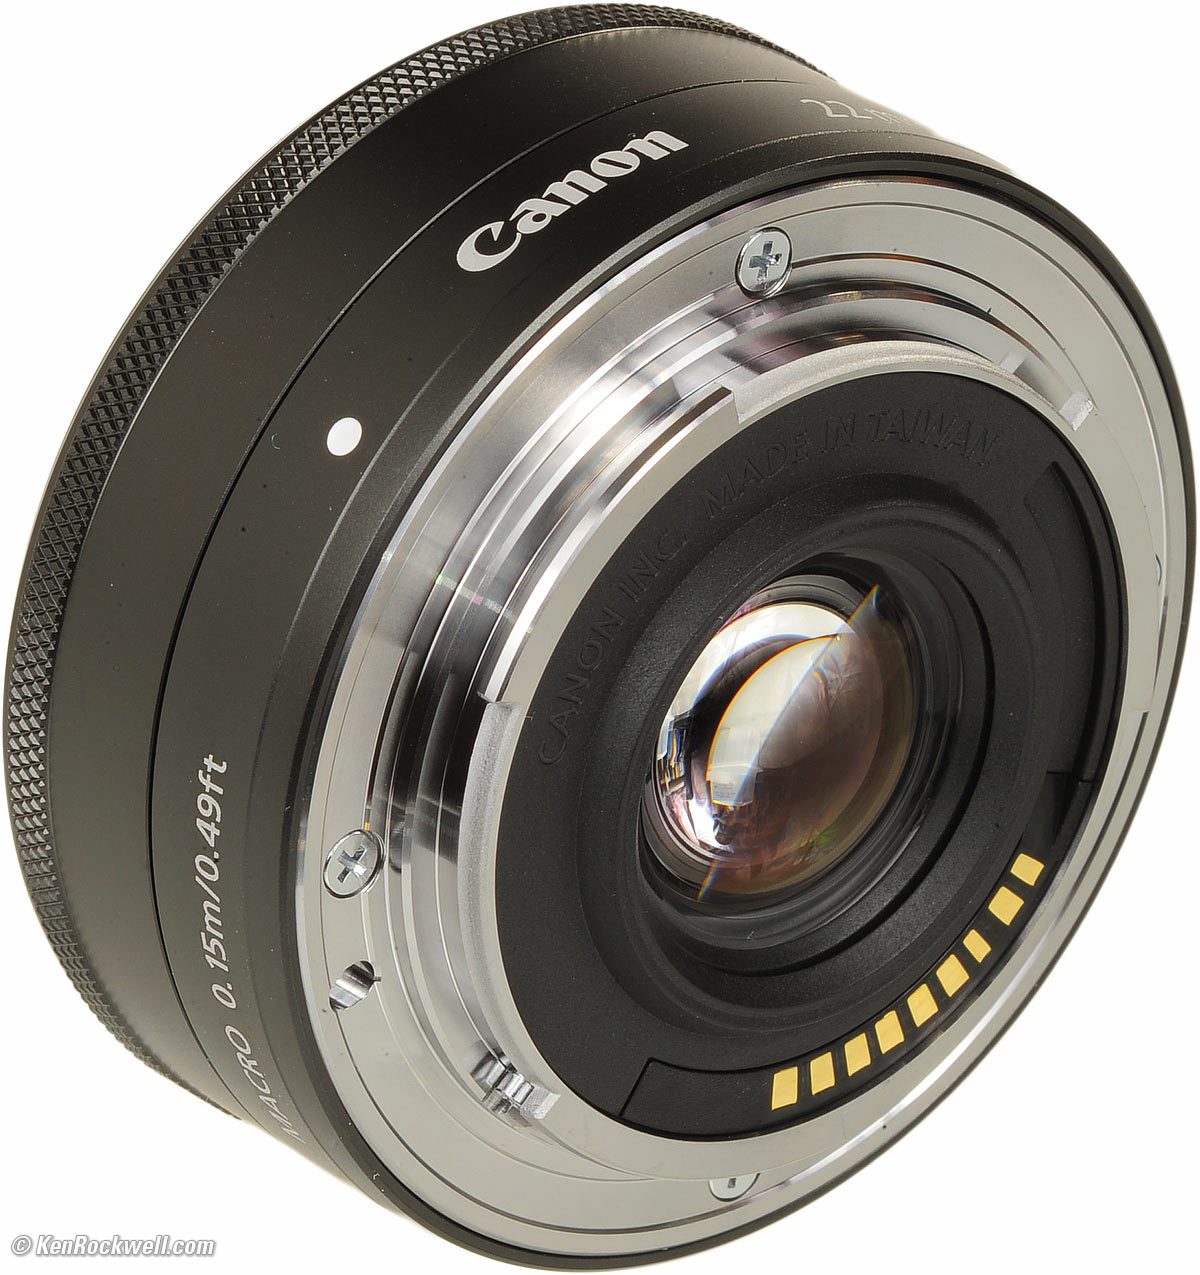 カメラ レンズ(単焦点) Canon 22mm f/2 STM Review